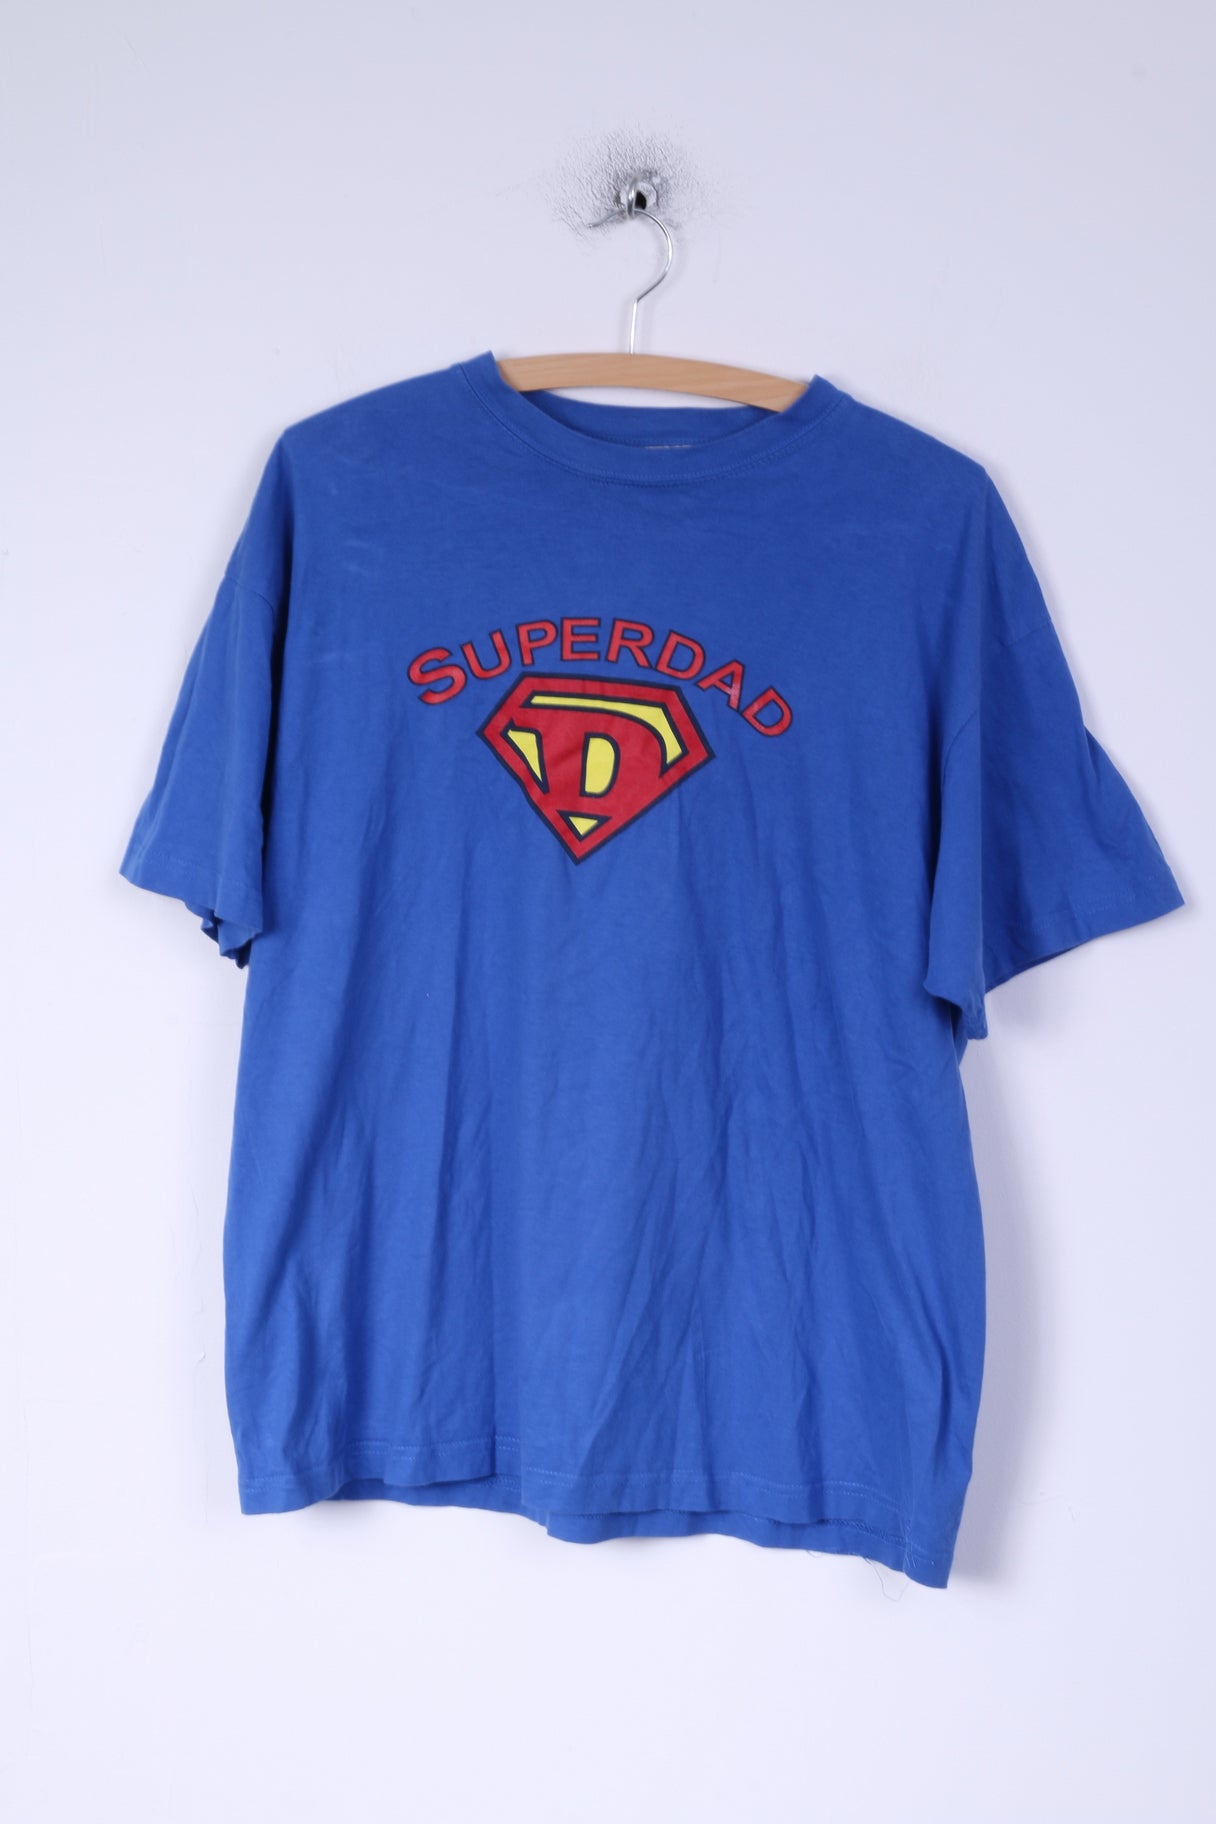 Bhs Ltd Mens L T-Shirt Blue Cotton Graphic Superdad Superhero